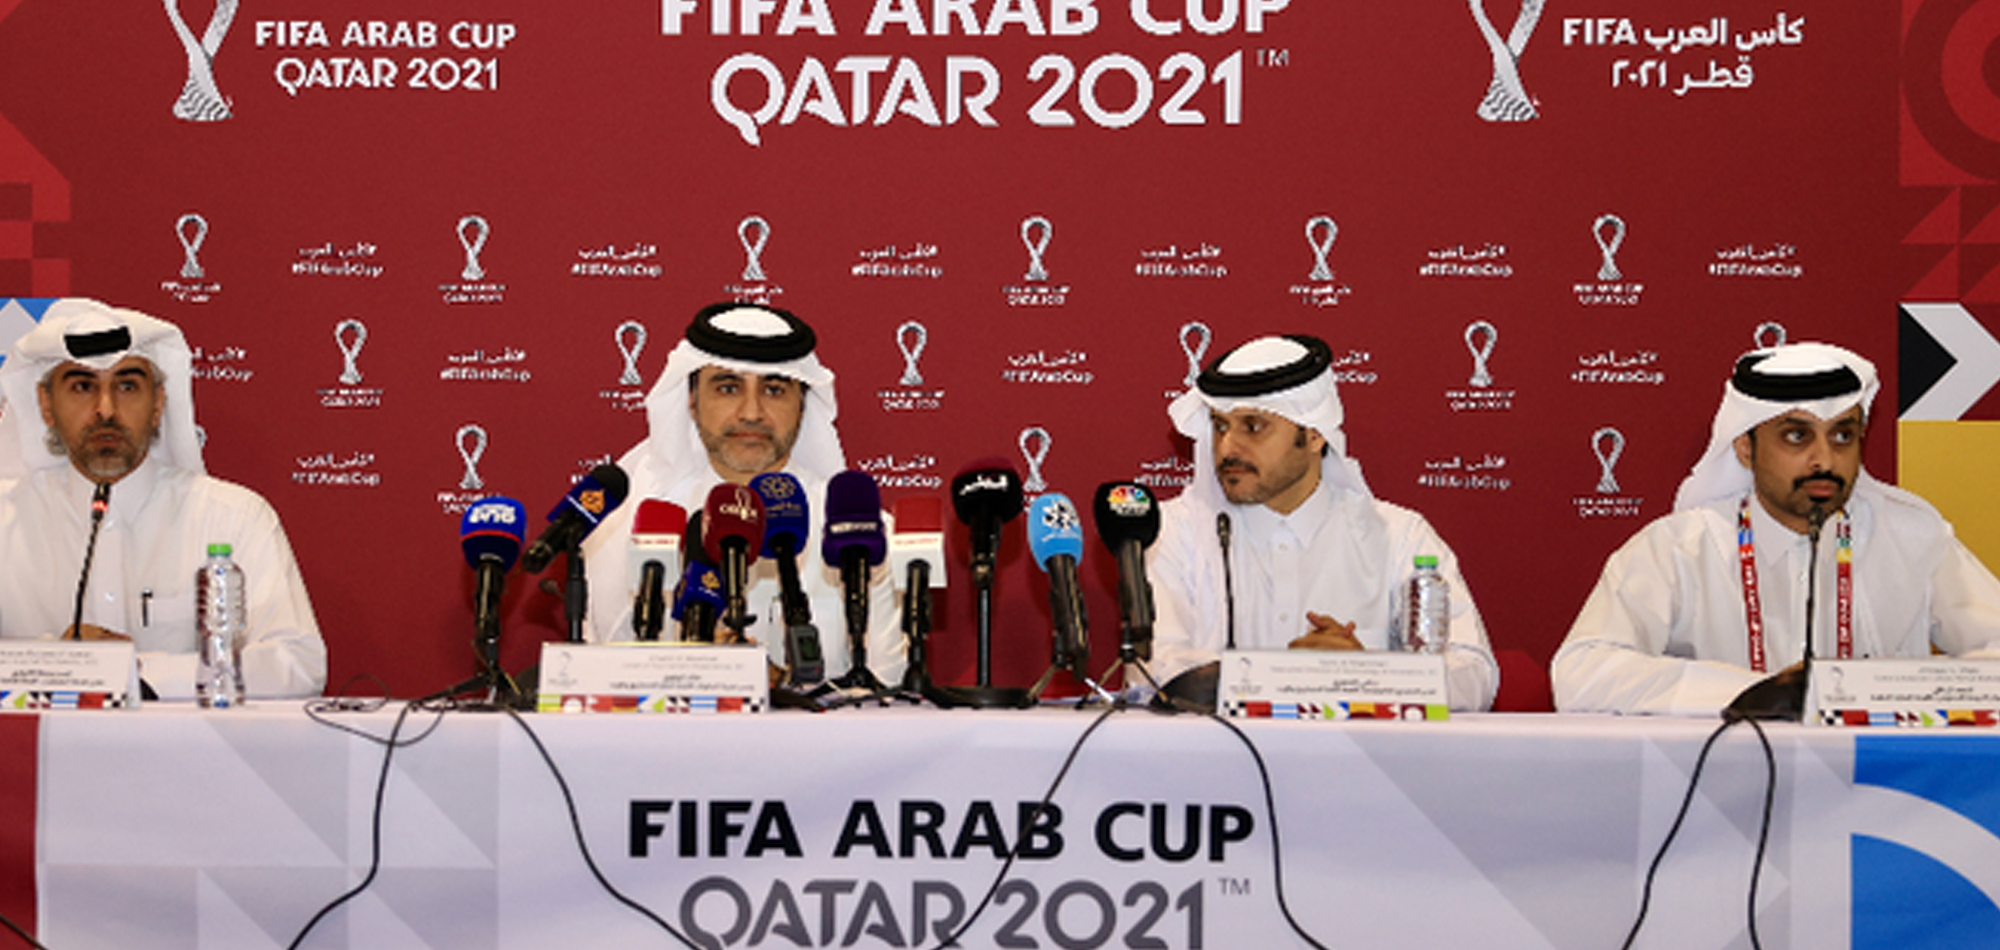 FIFA ARAB CUP QATAR 2021 FAN CARD NAMED AS ‘HAYA’